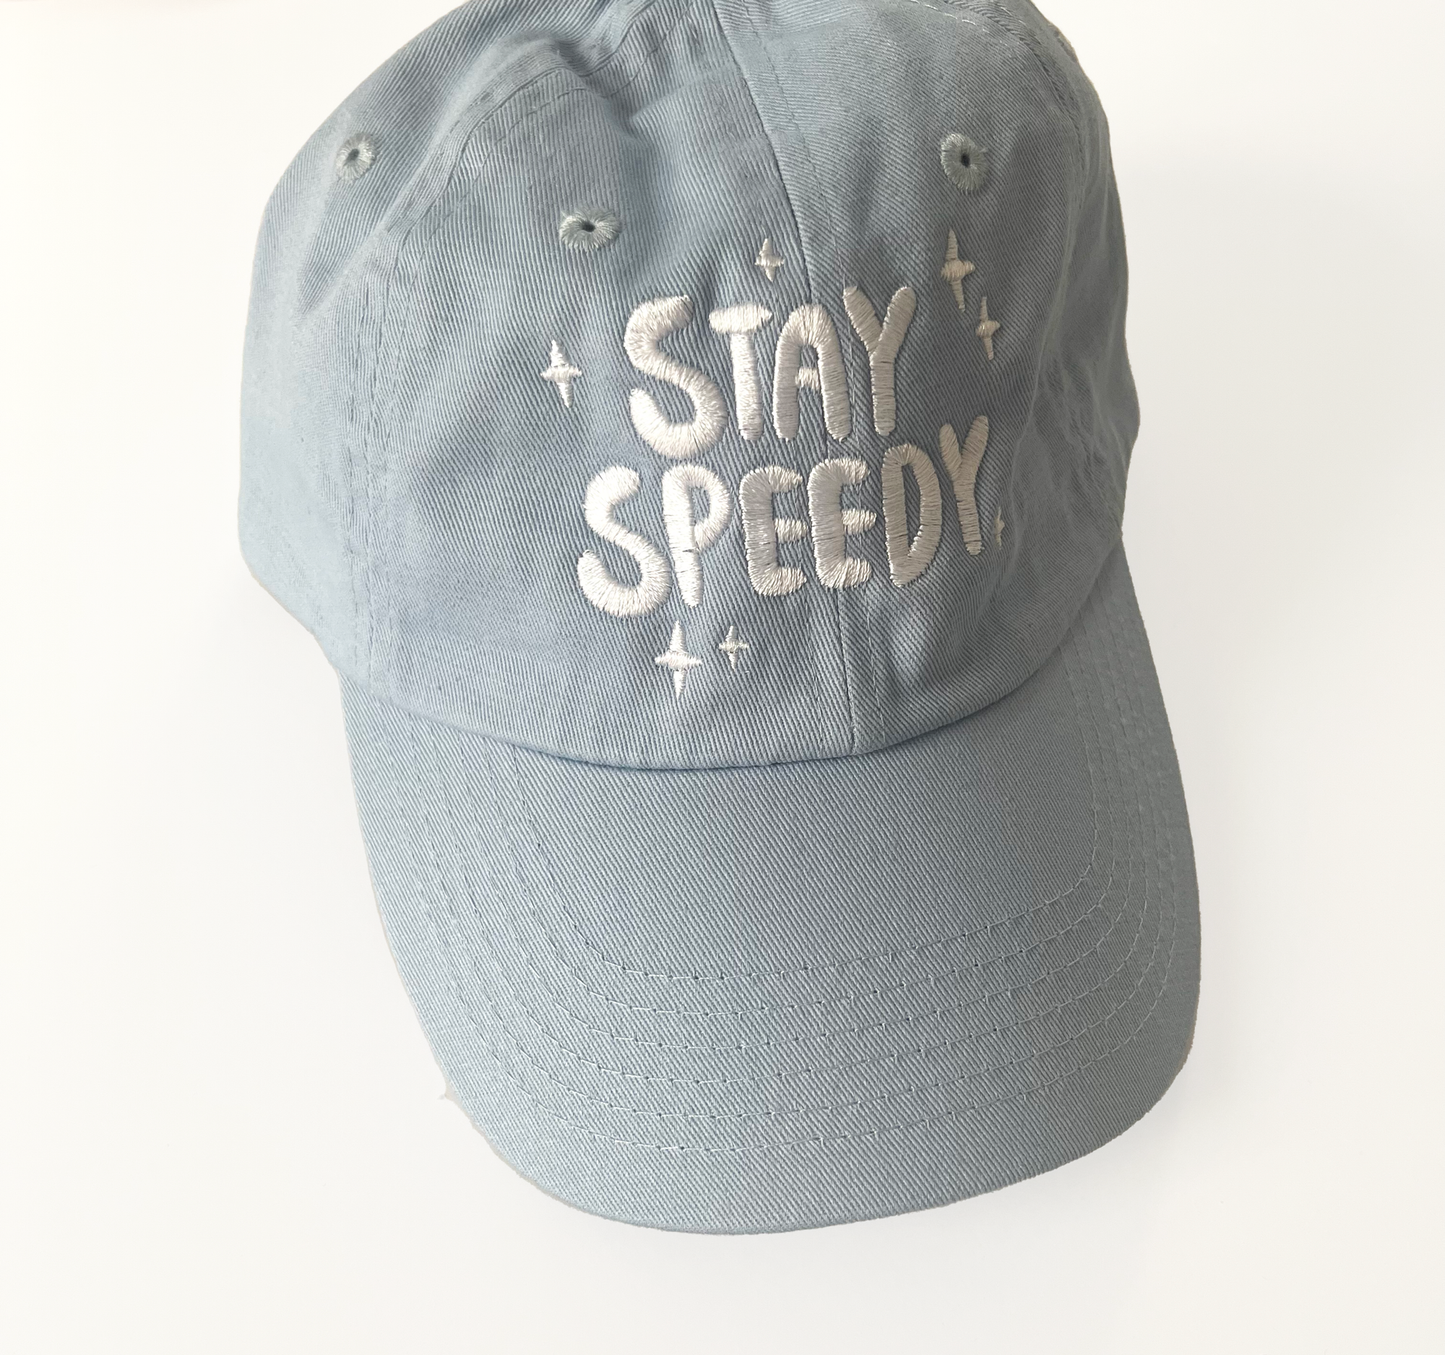 Stay Speedy Hat